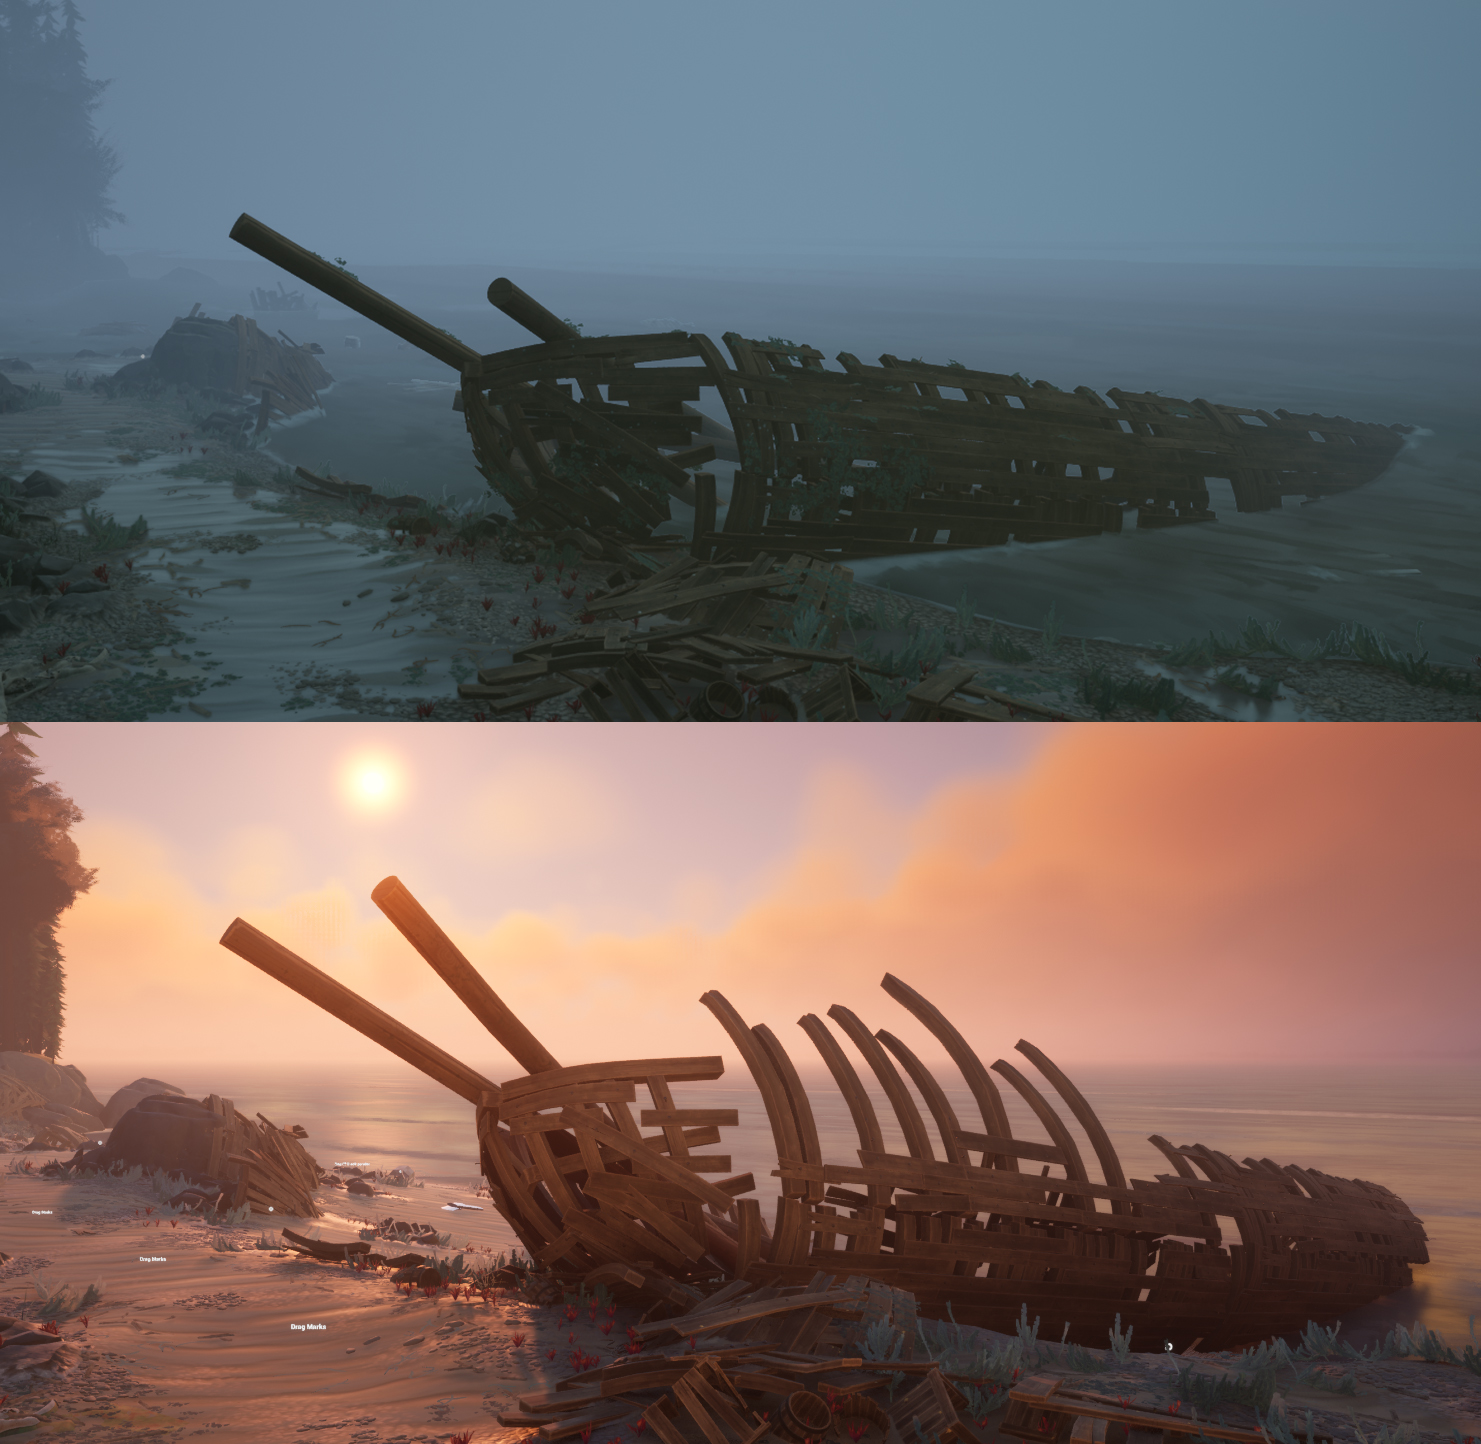 Duas fotos lado a lado mostram um navio naufragado reduzido a apenas seu esqueleto. 